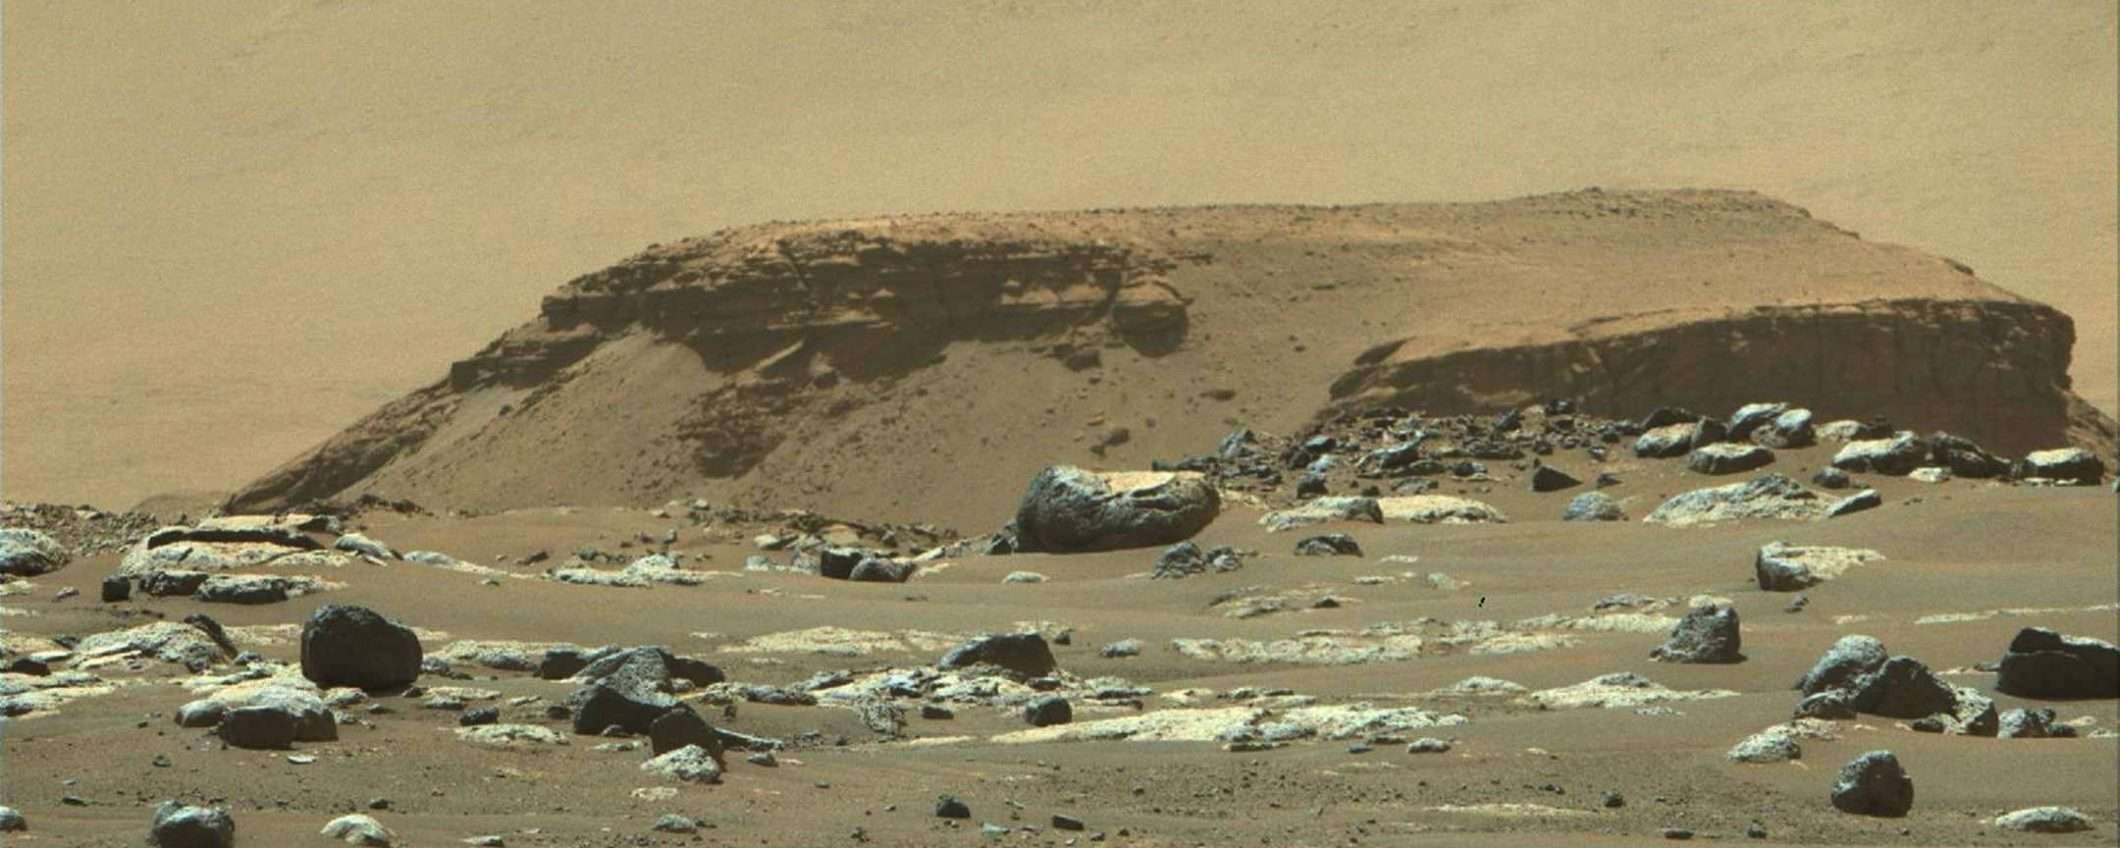 Perseverance conferma che c'era acqua su Marte